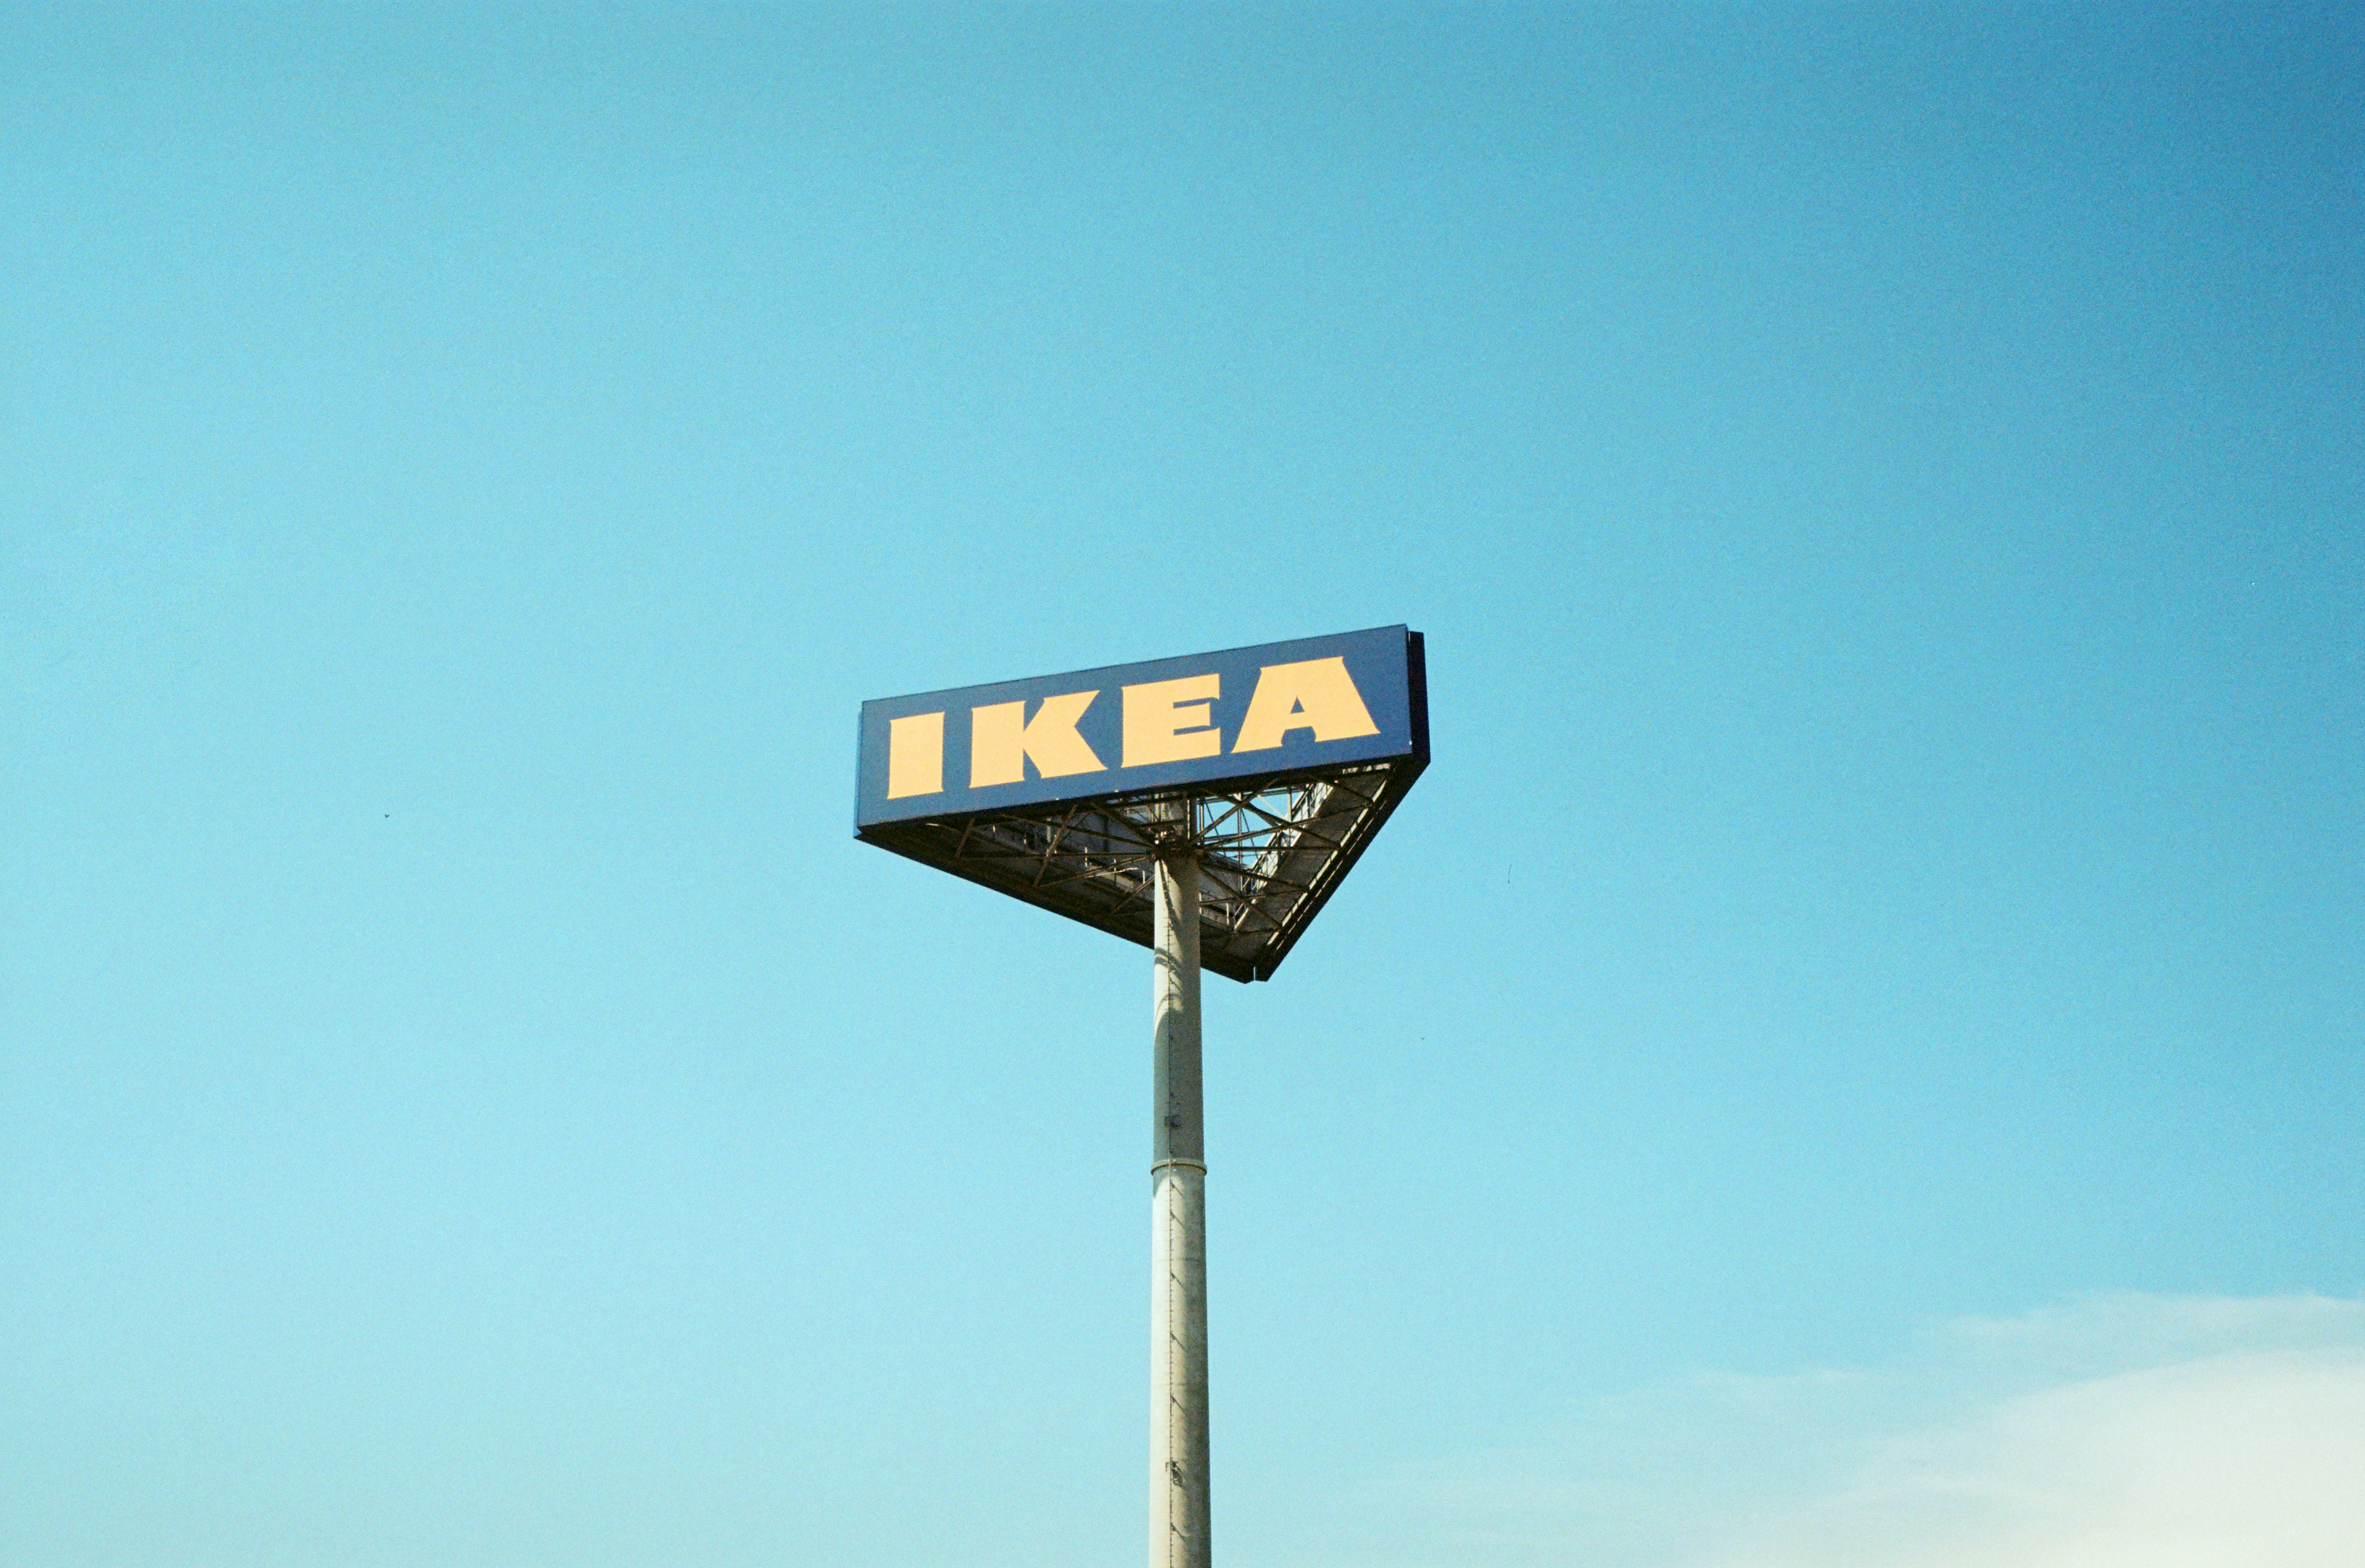 Leeuwarden wordt het decor voor de kleinste IKEA van Nederland